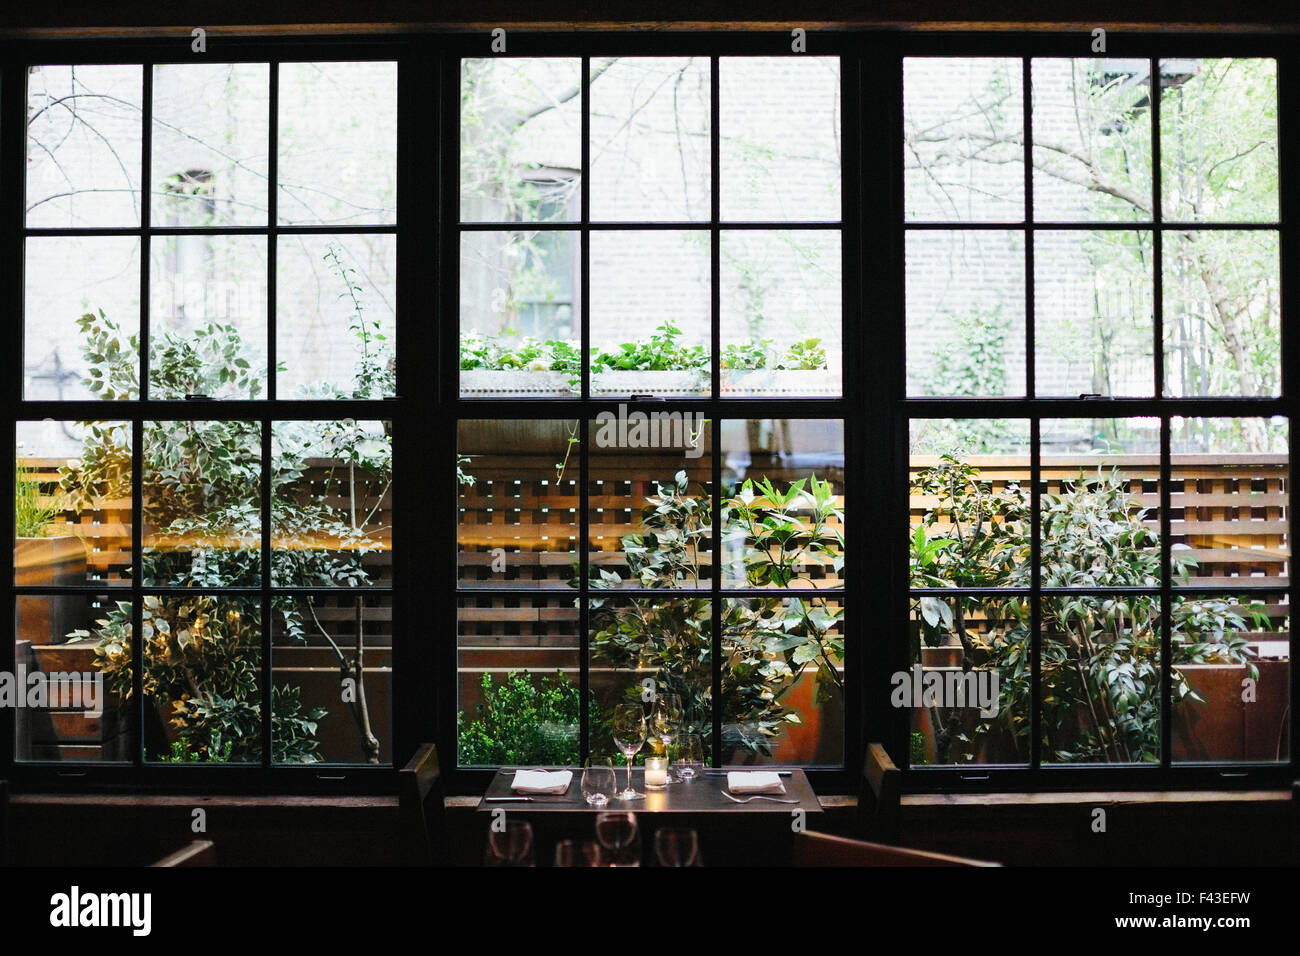 Innenansicht eines Restaurants in Manhattan West Village, Fenster mit Blick auf einen Garten. Stockfoto